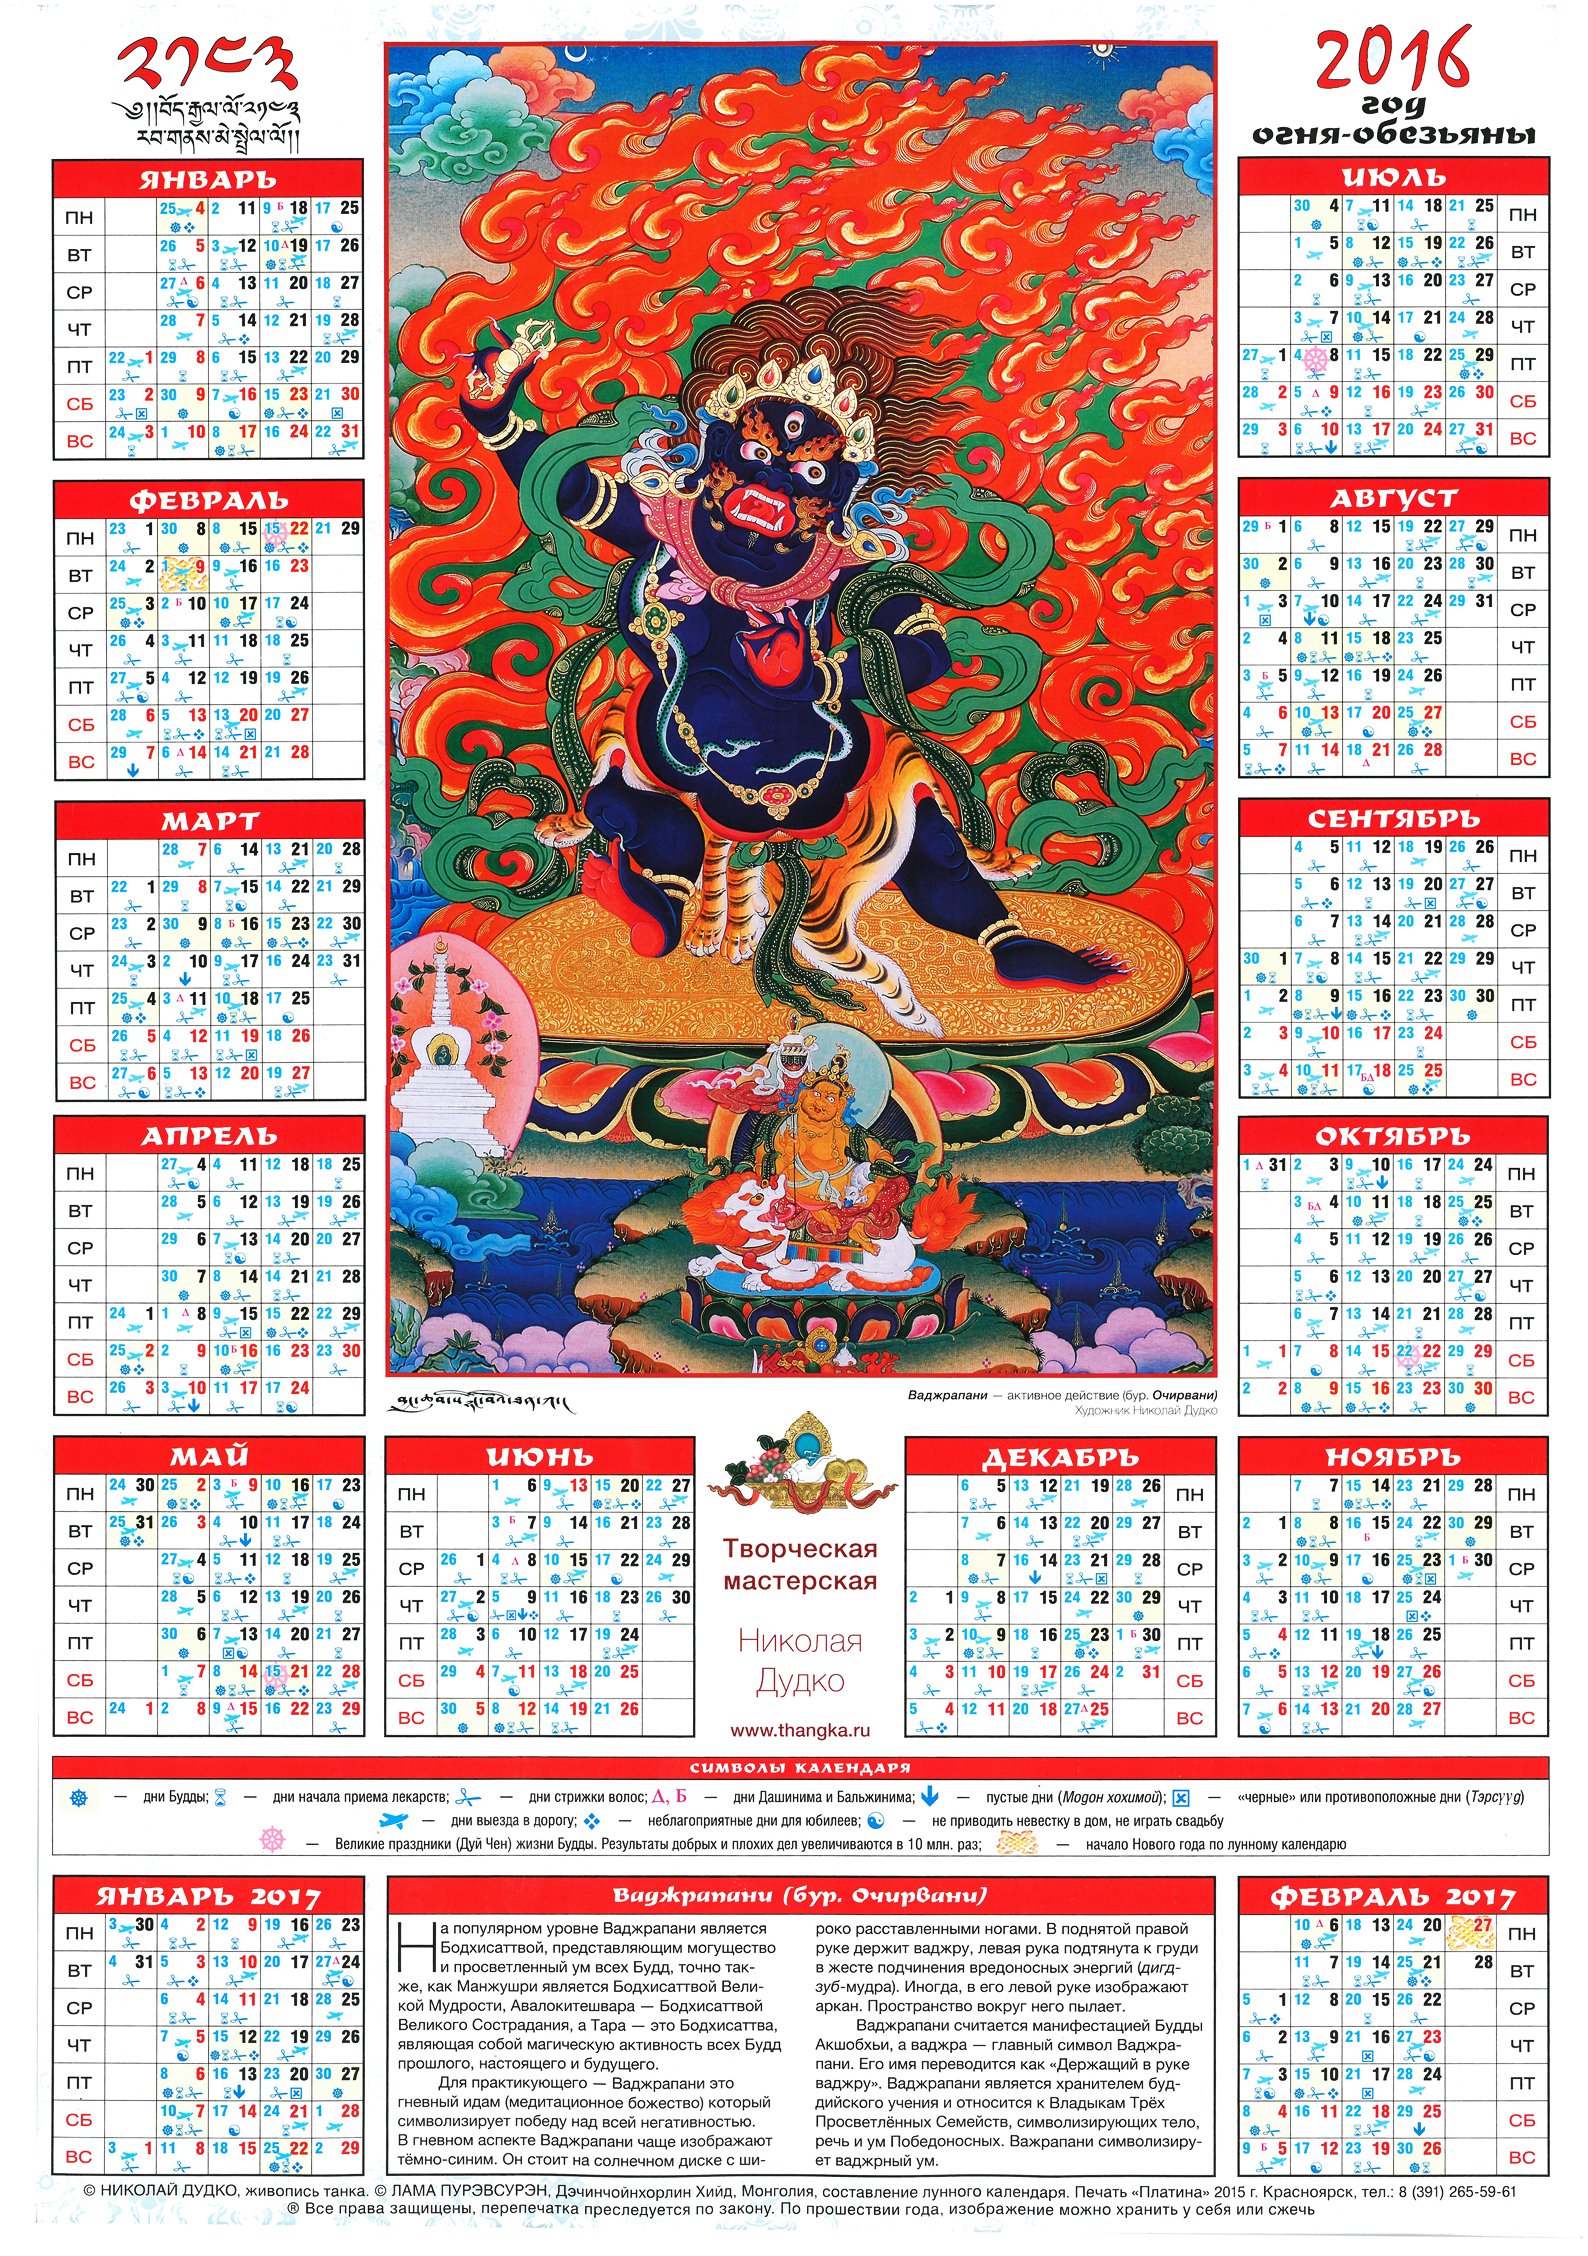 Tibetan_calendar_2016_2500pix.jpg